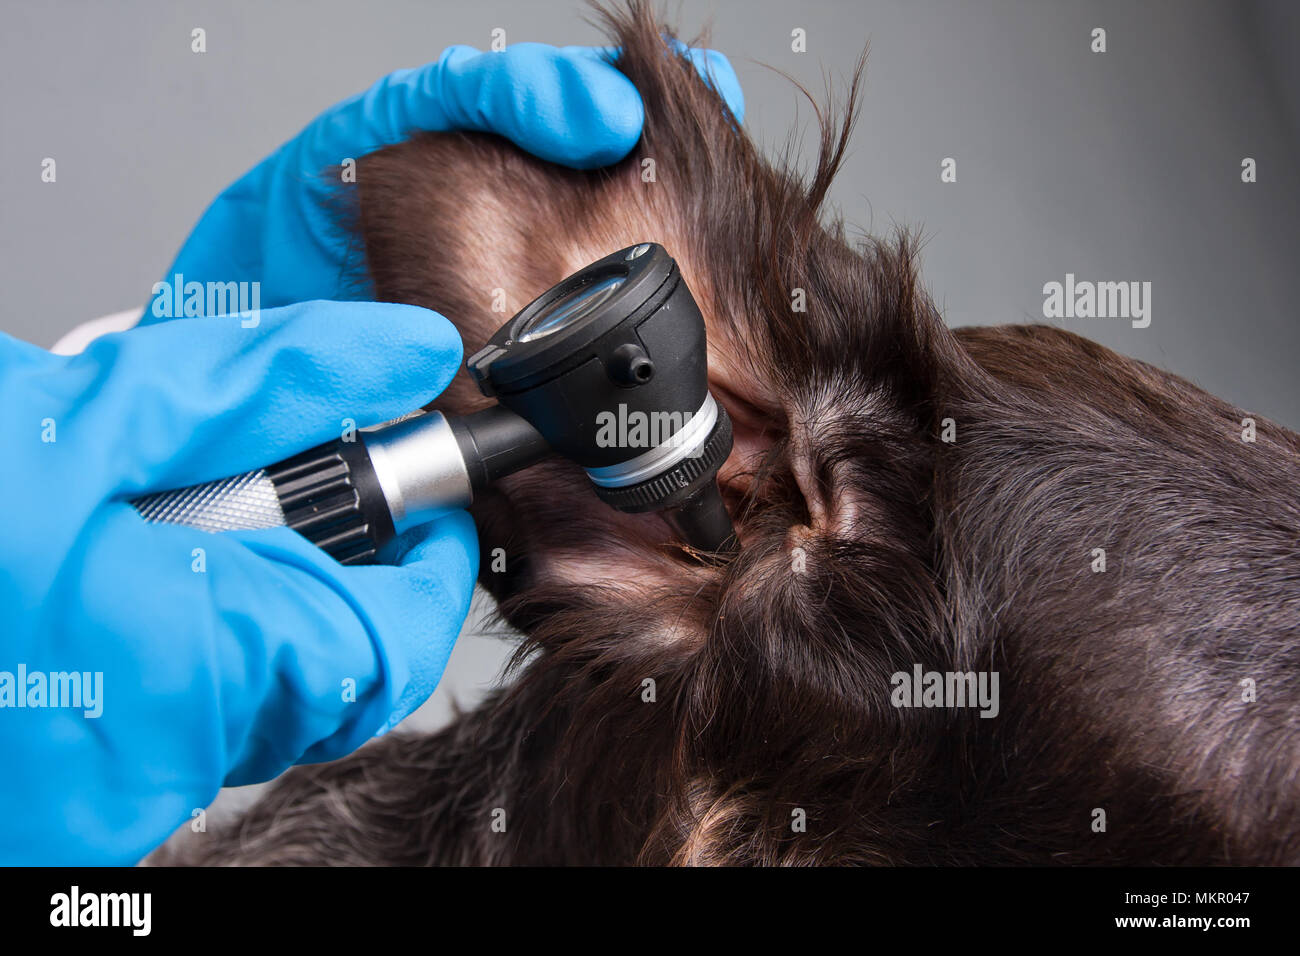 Hände von Tierarzt Prüfung Ohr von Hund mit otoskop in Tierklinik  Stockfotografie - Alamy